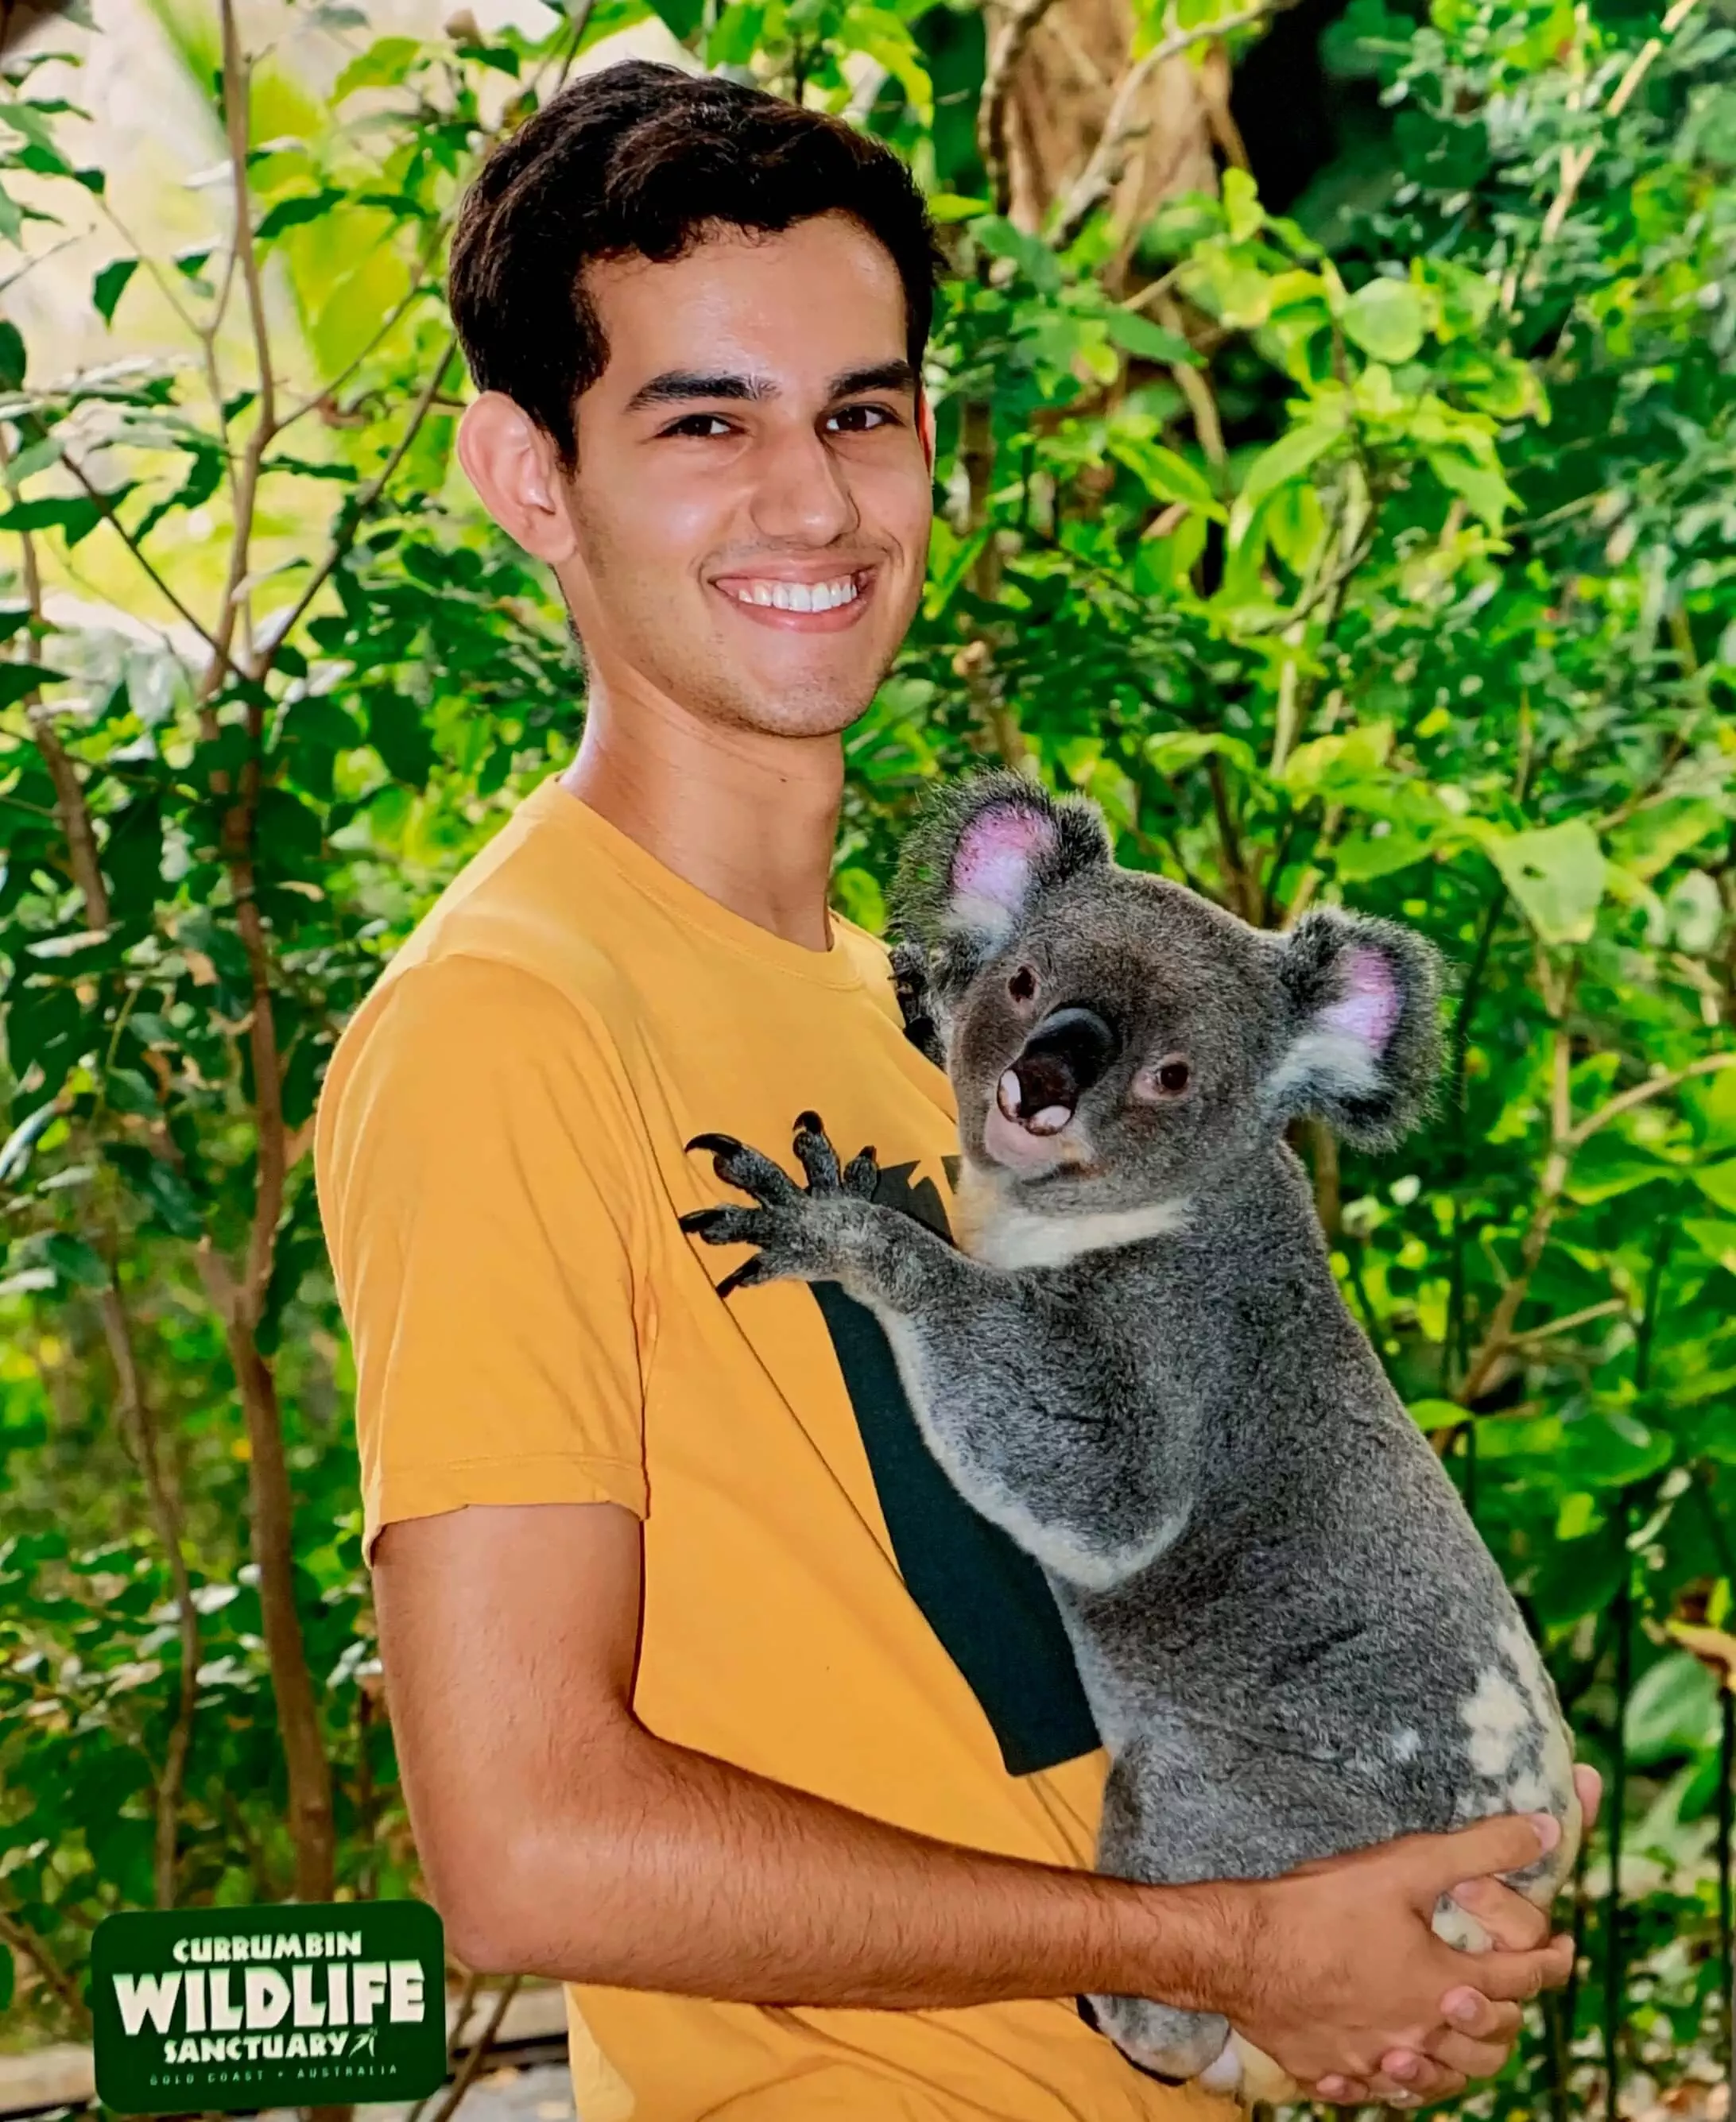 Bruno também teve a oportunidade de conhecer e ficar pertinho de um coala